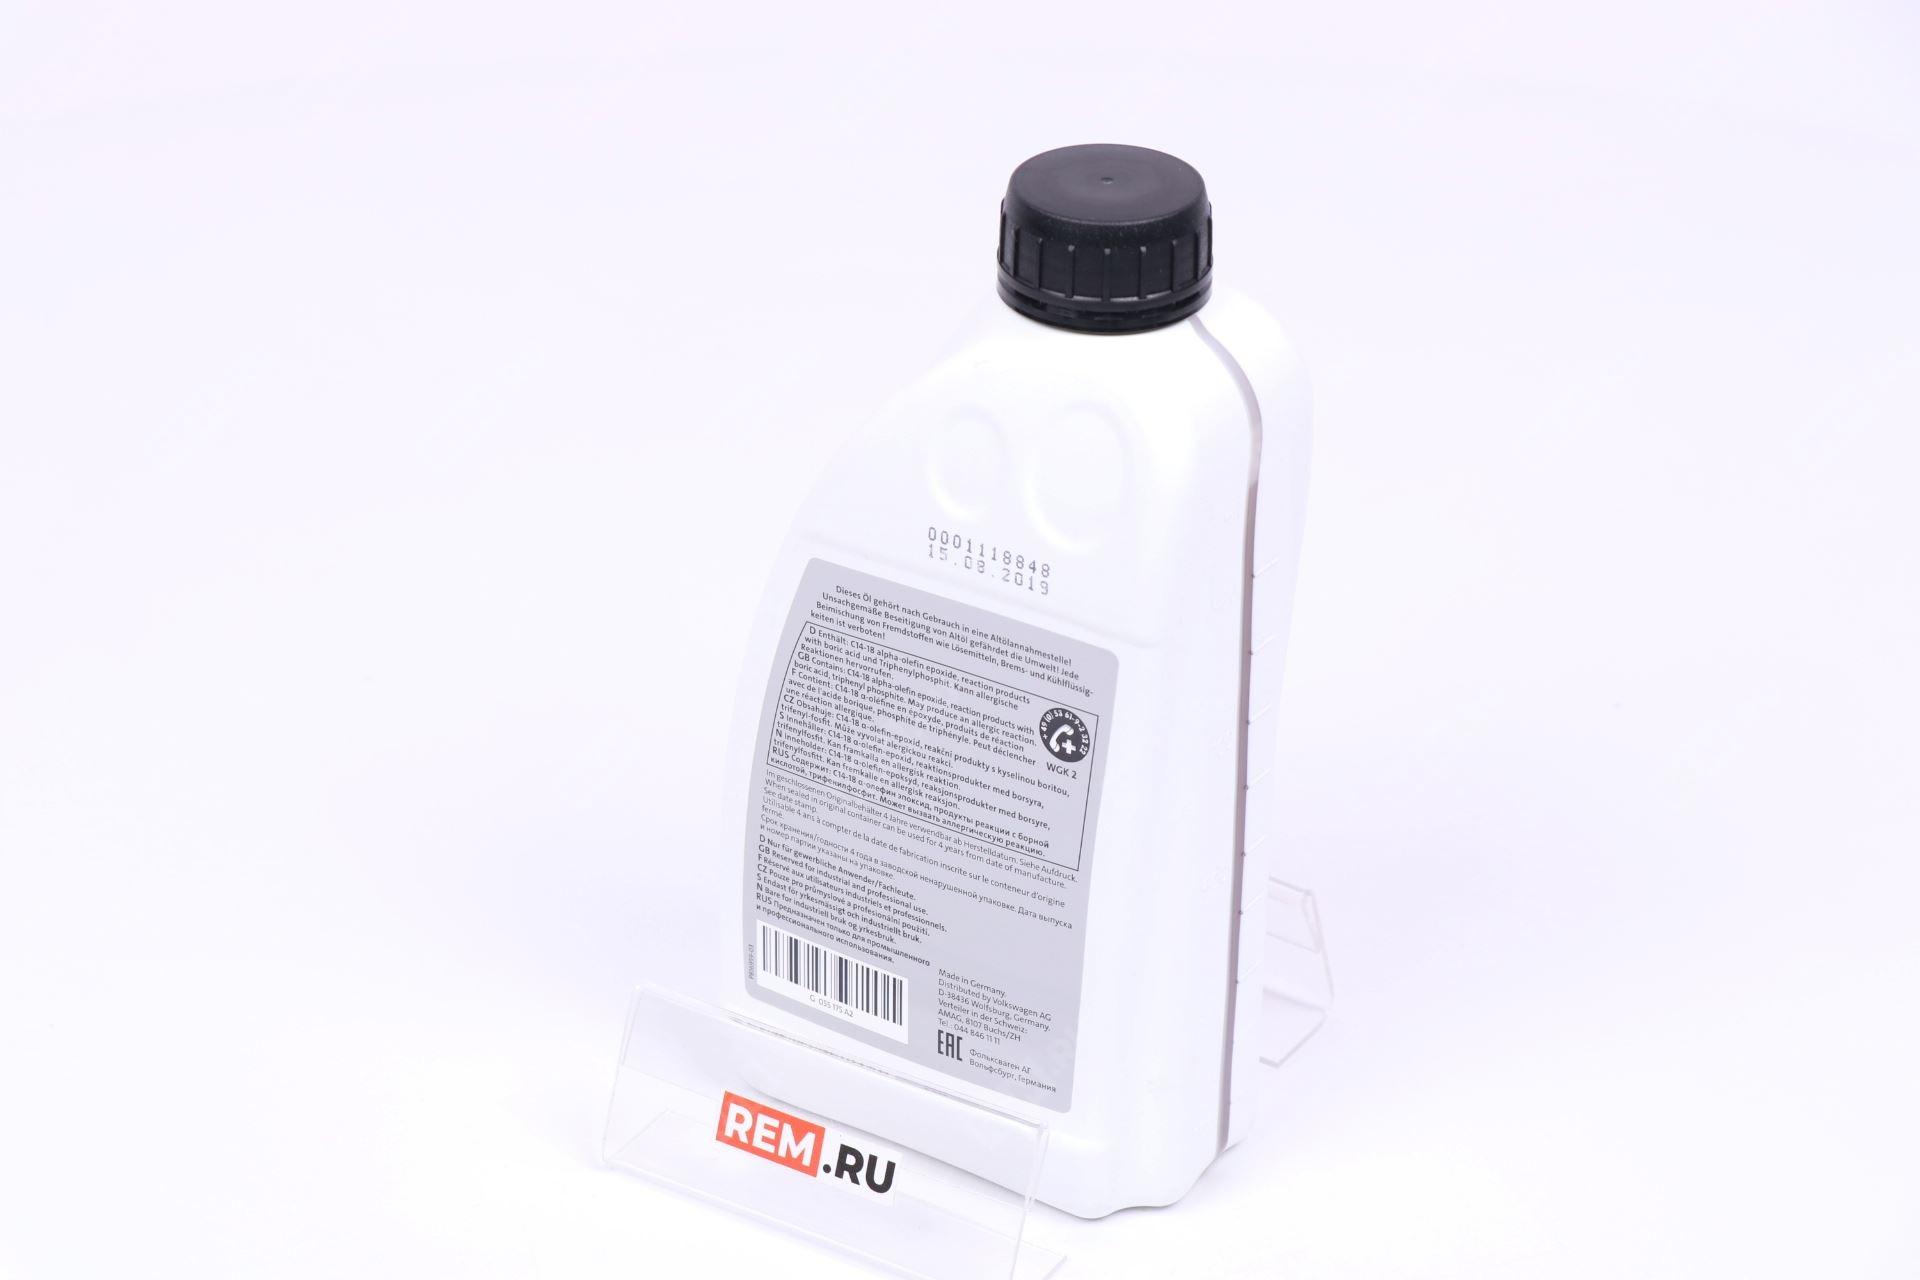  G055175A2  масло для муфты haldex, 1л (фото 3)